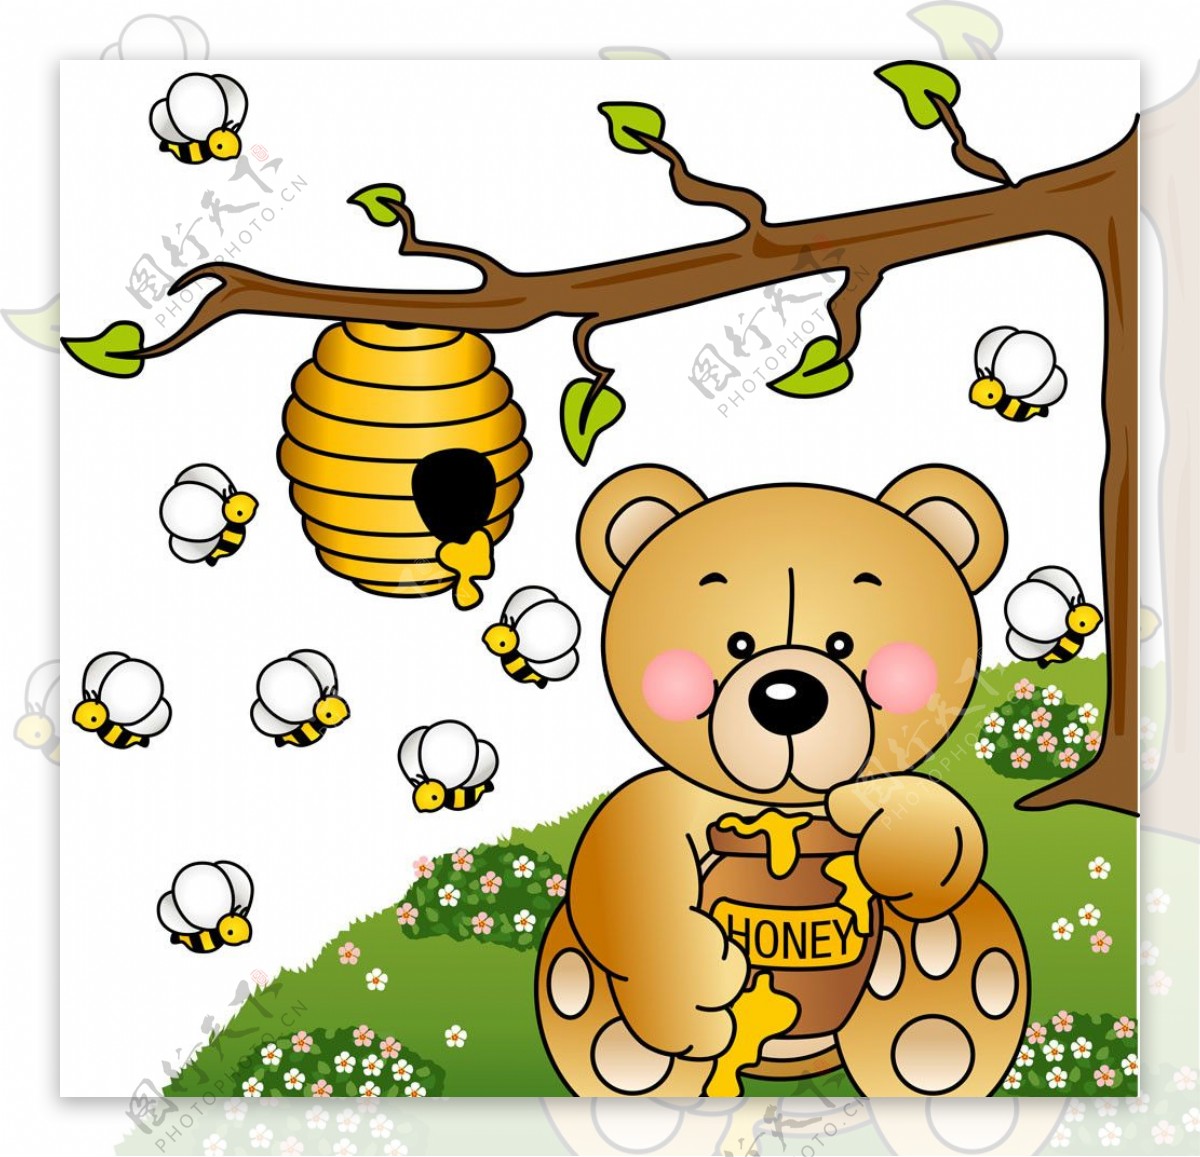 吃蜂蜜的小熊图片